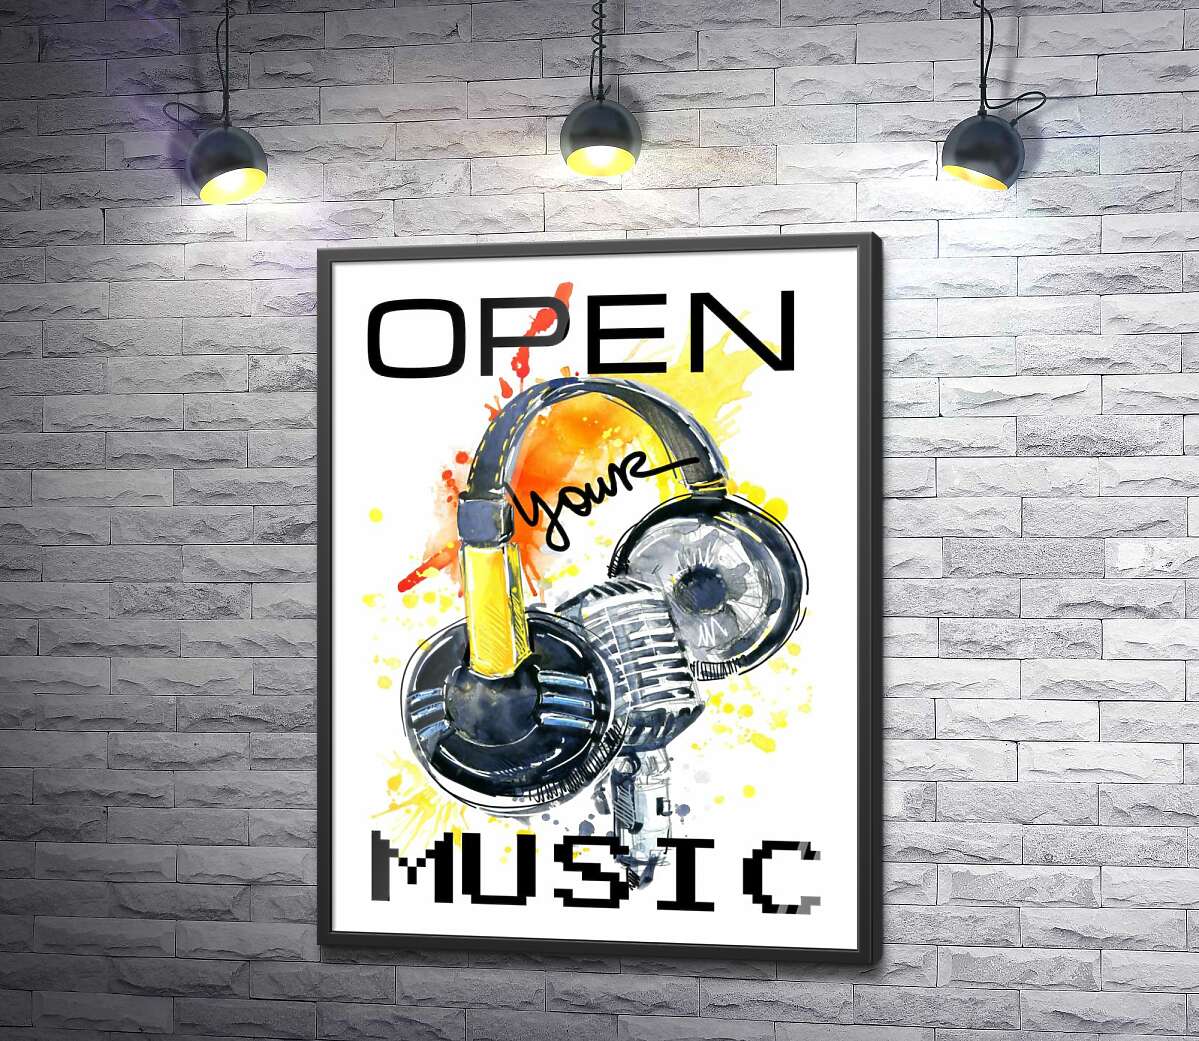 постер Наушники и микрофон на оранжевом фоне с надписью "open your music"